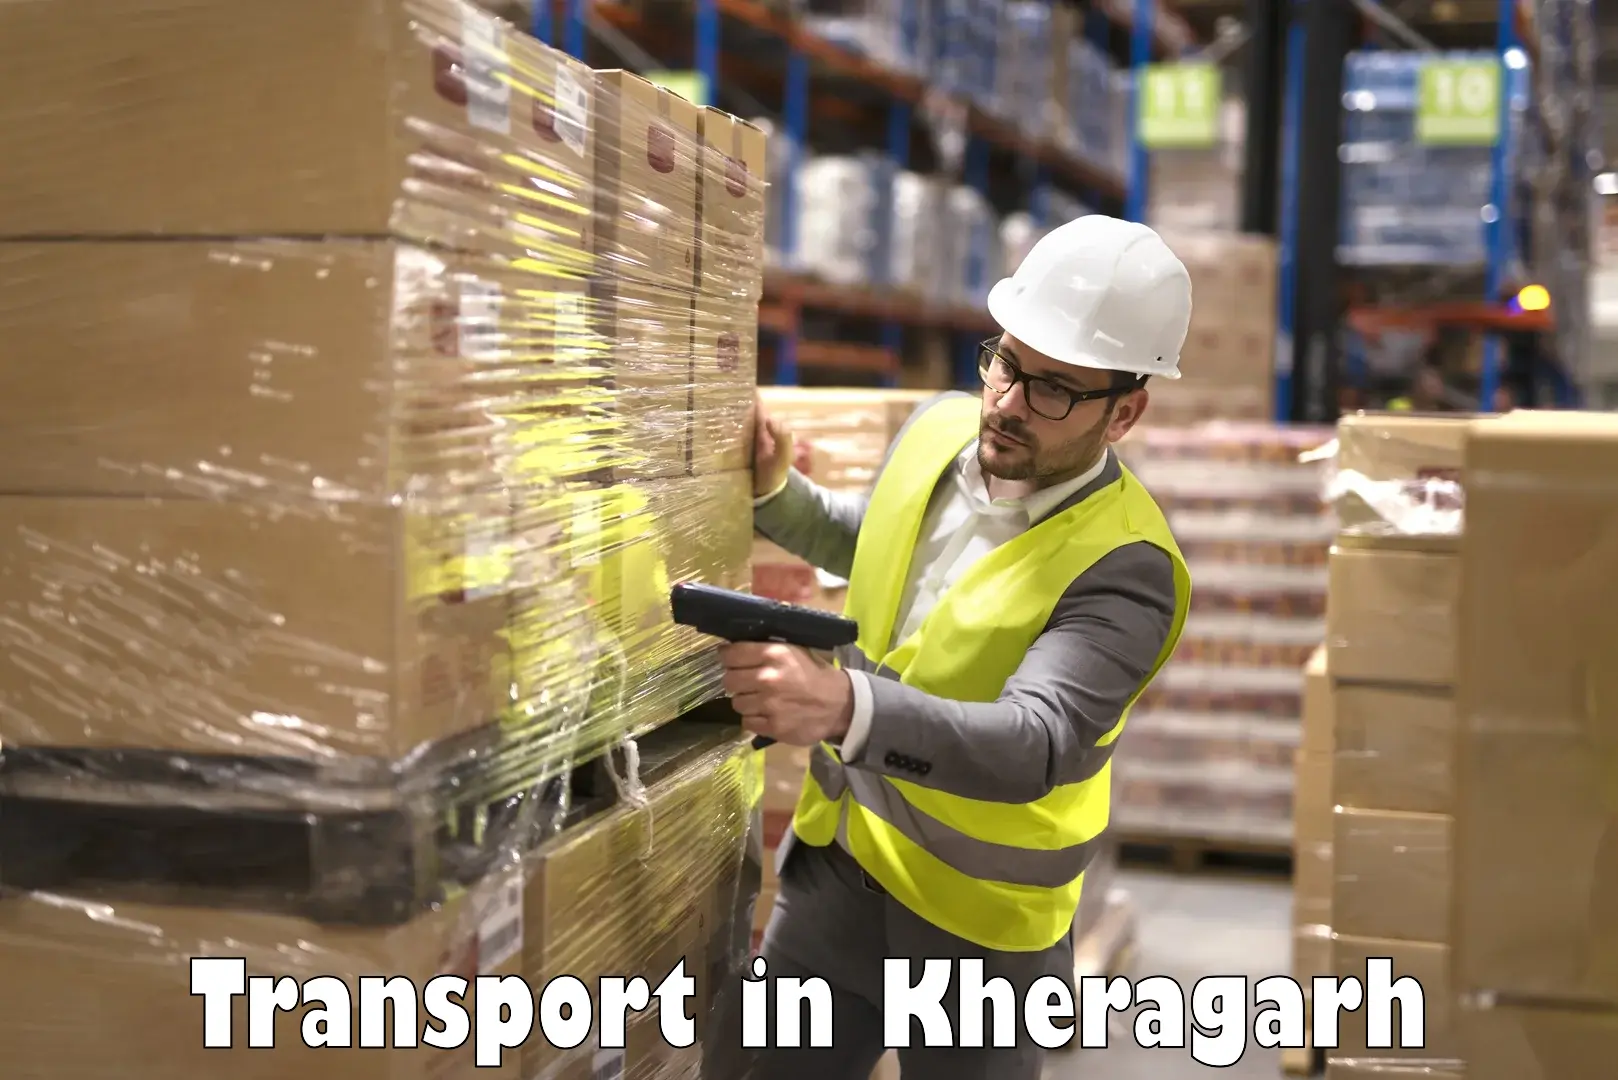 Cargo transport services in Kheragarh